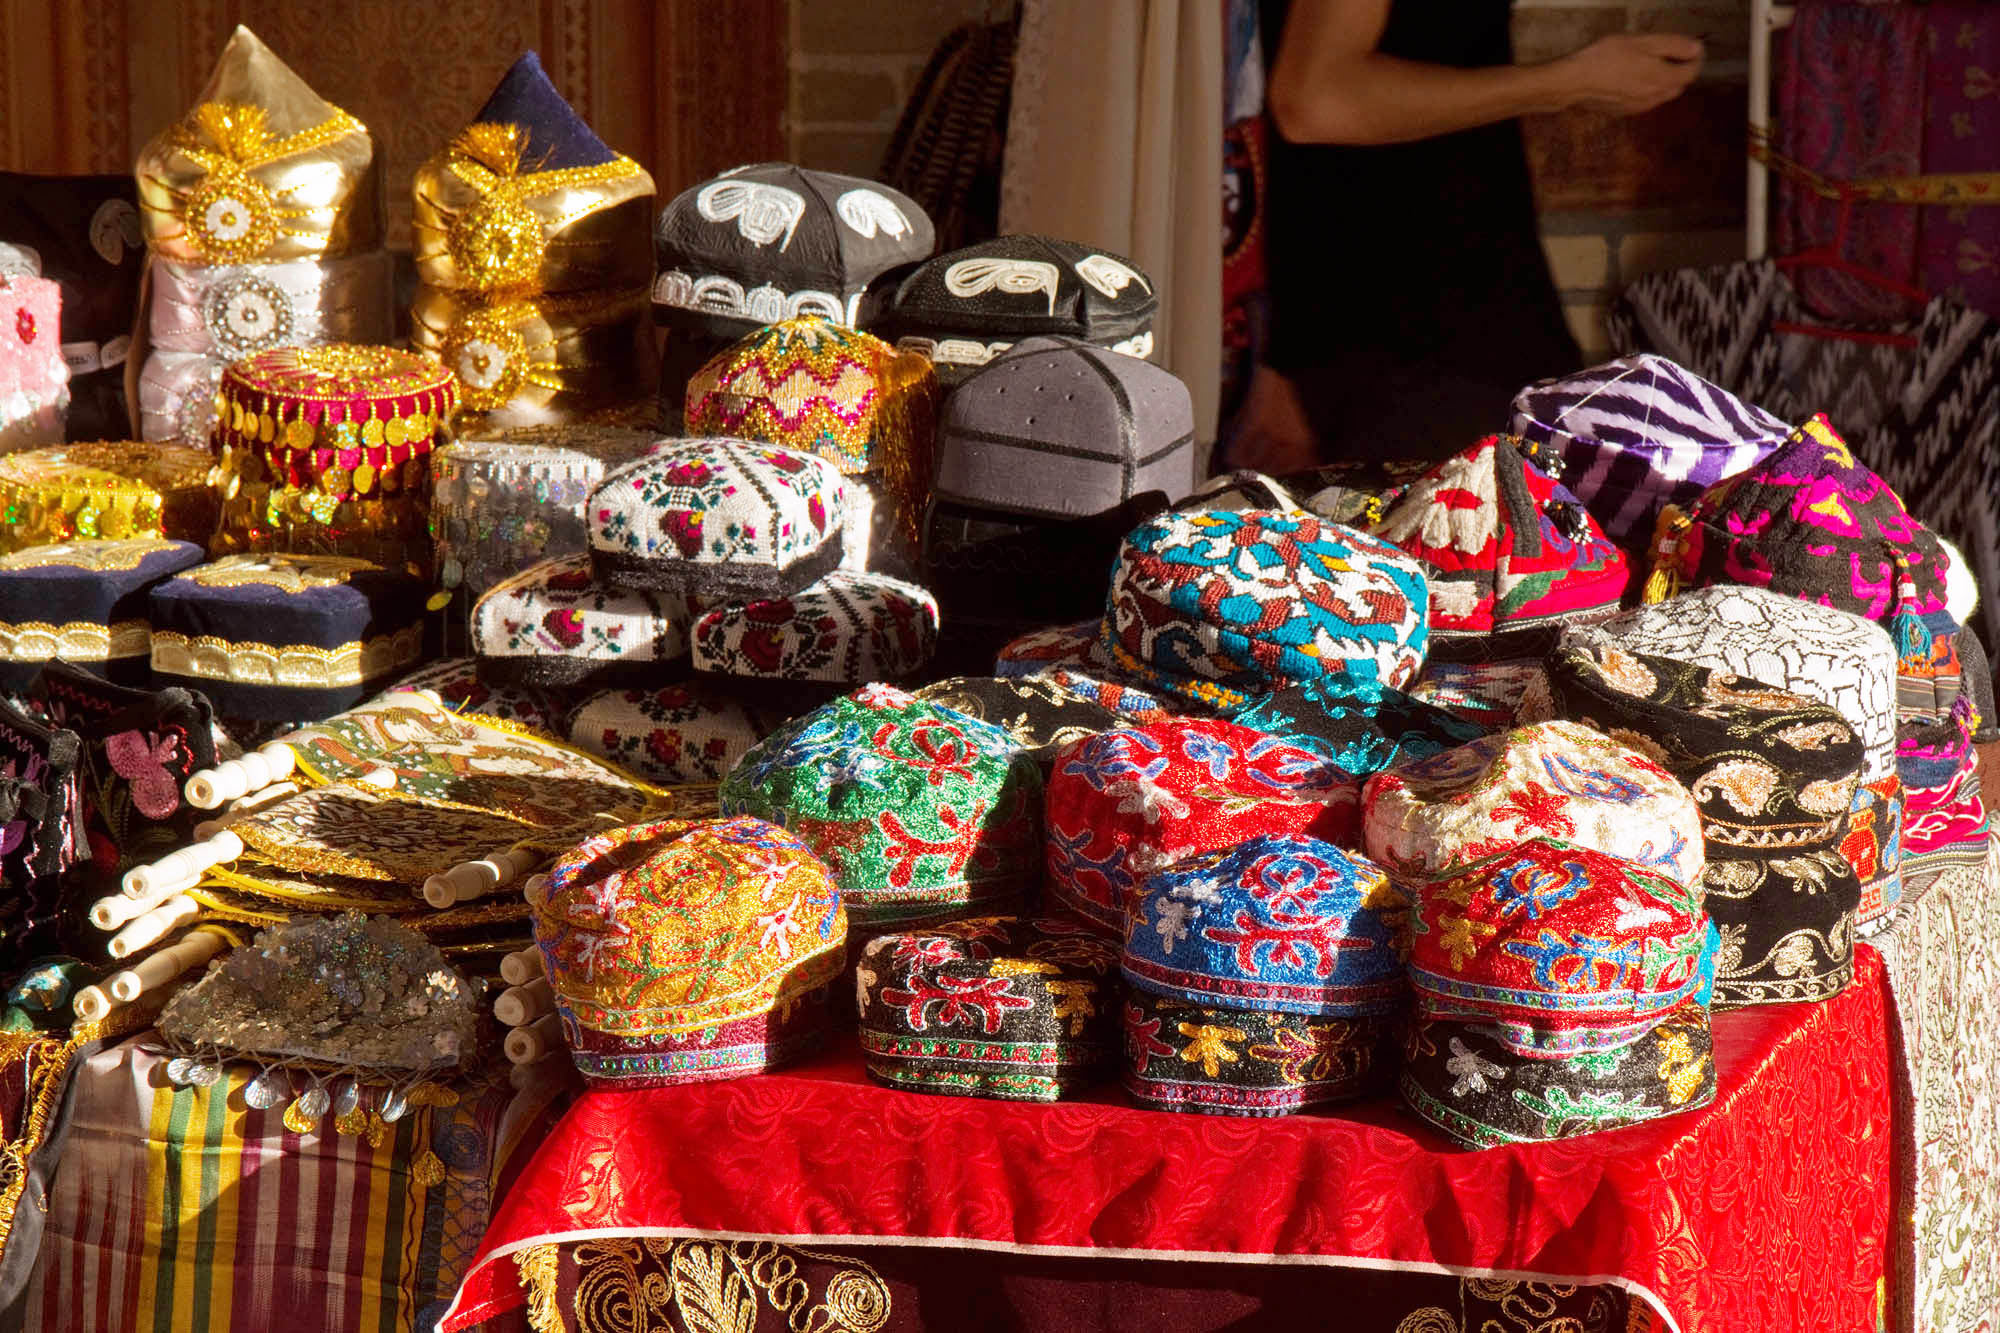 Uzbek hats